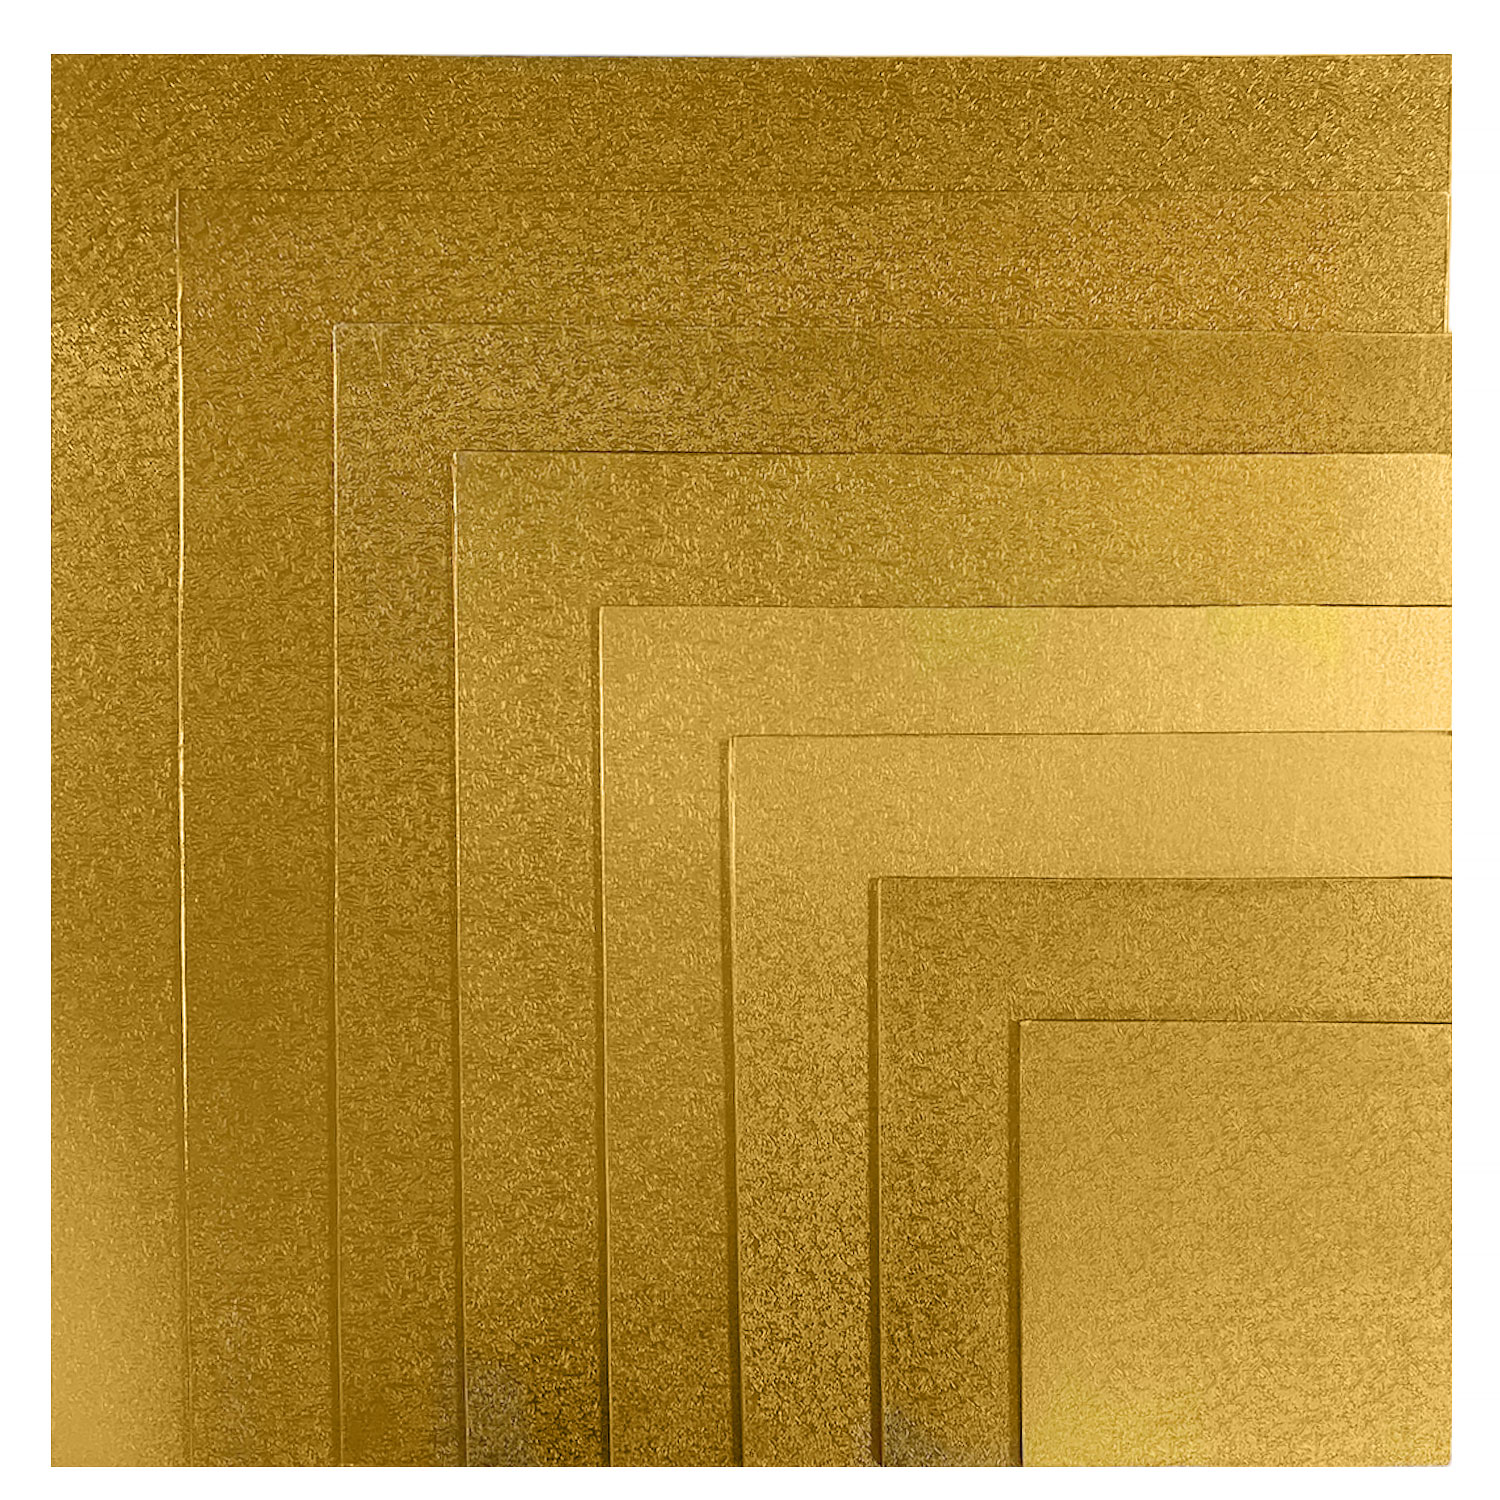 6" Square Gold Foil Sturdy Board